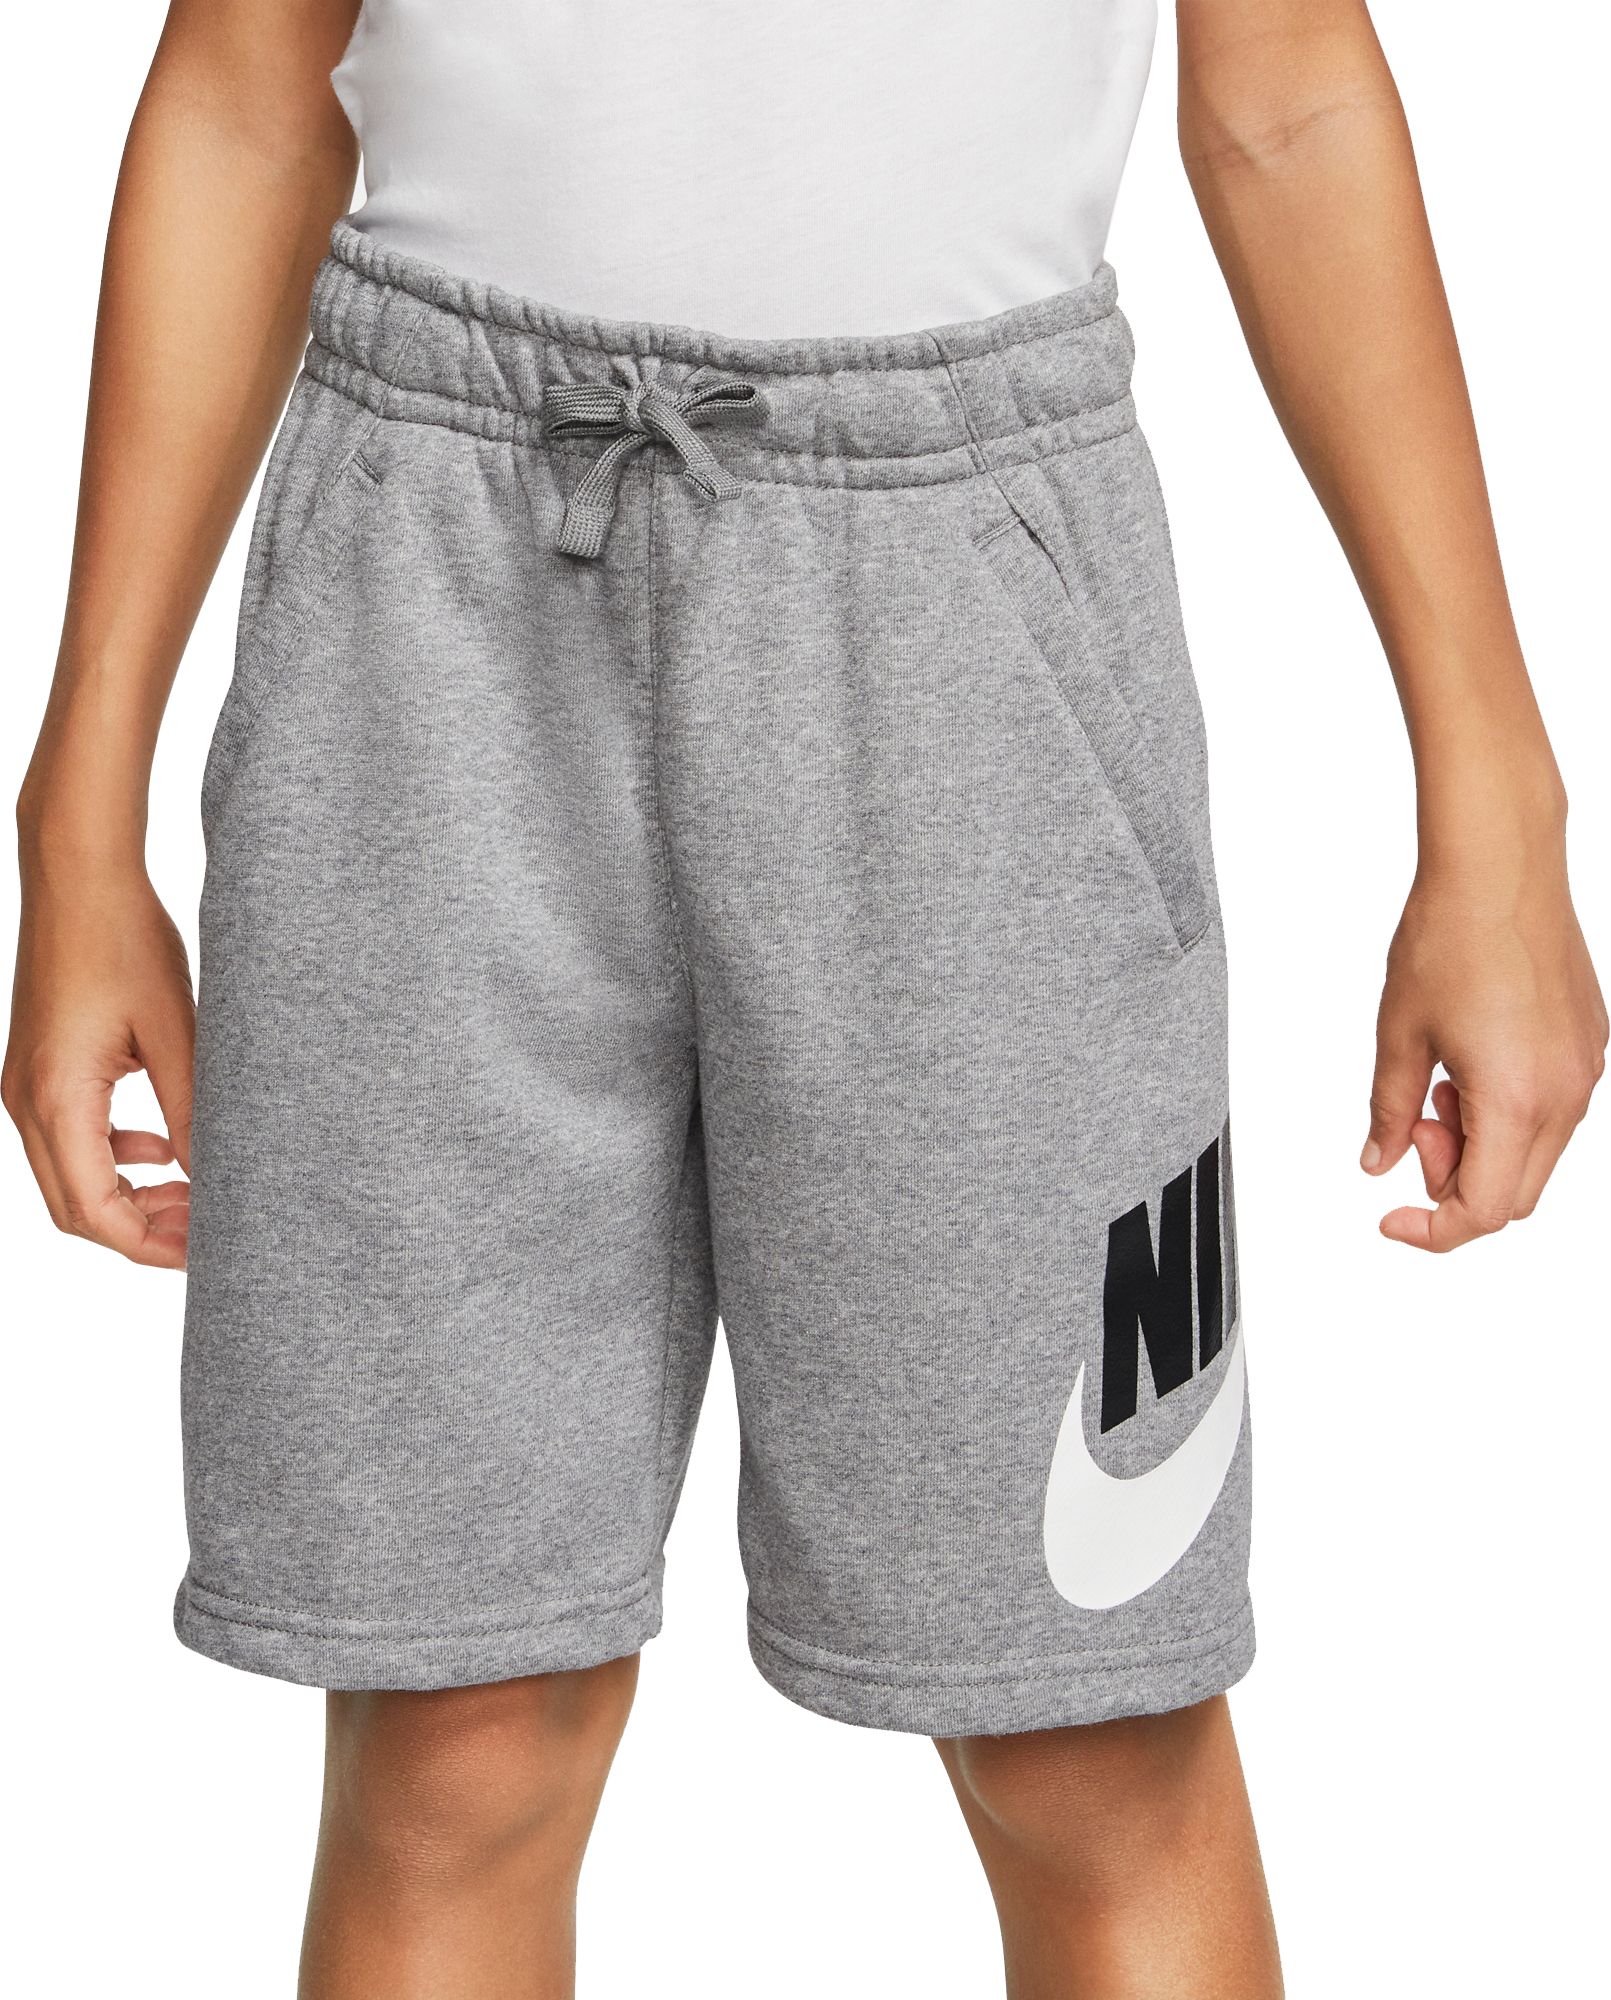 boys adidas fleece shorts